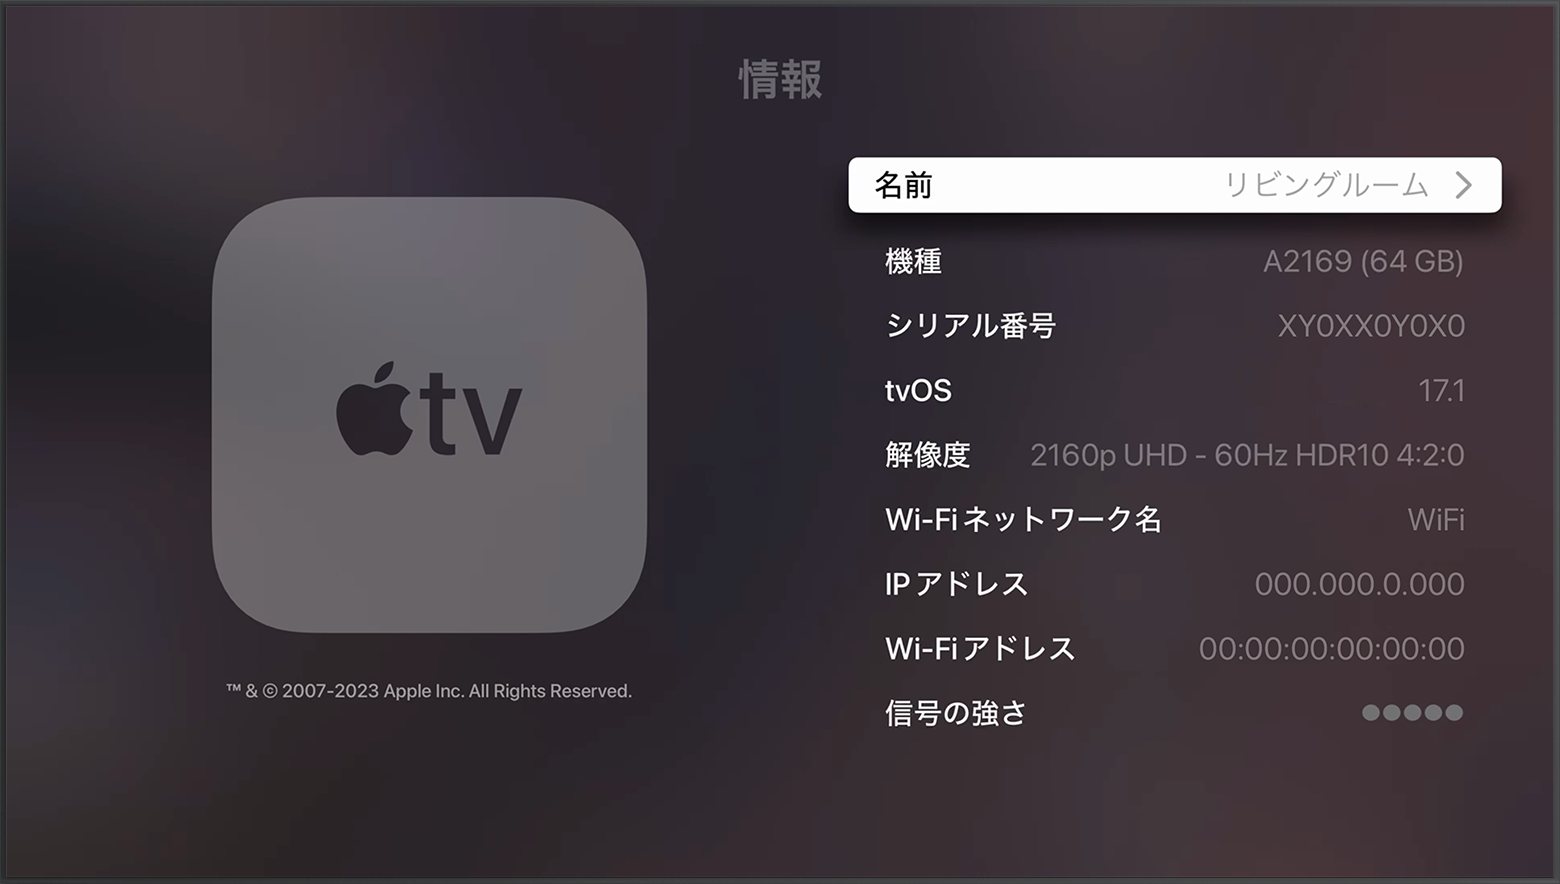 Apple TV の「情報」画面の上部付近にシリアル番号が表示されているところ